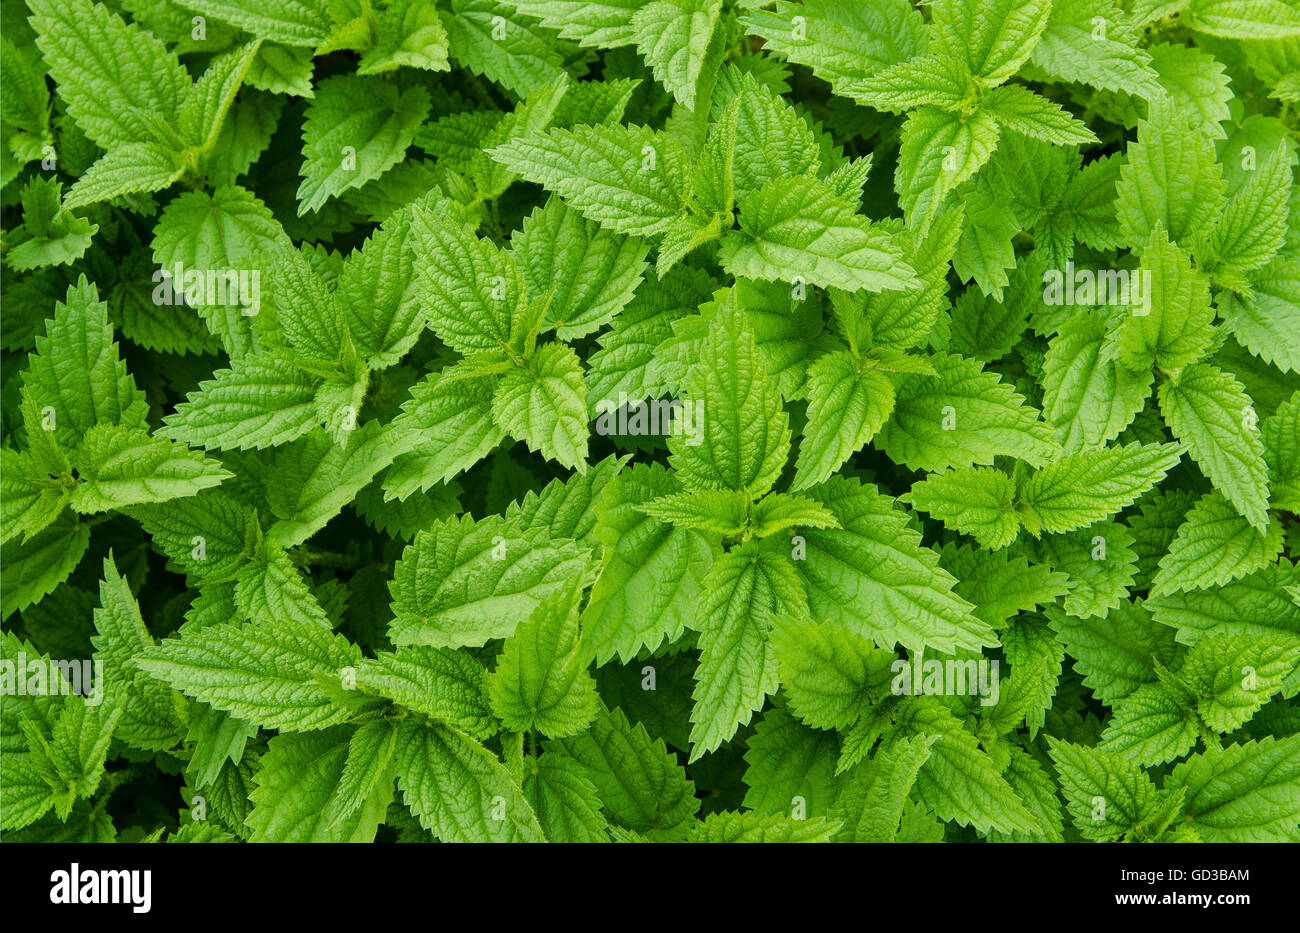 Green fresh nettles background Stock Photo